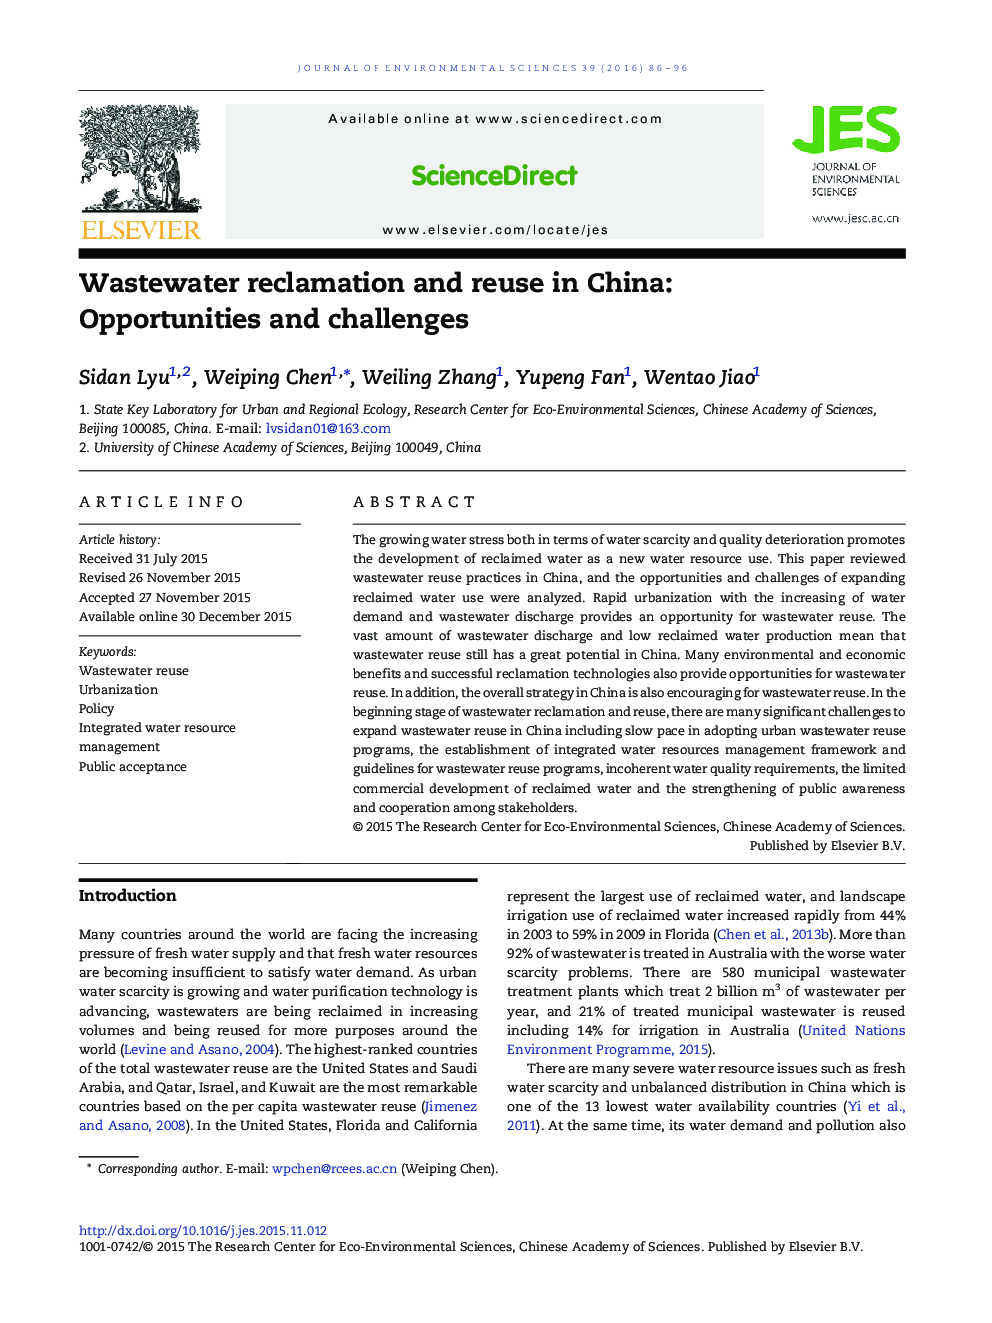 احیا و دفع فاضلاب در چین: فرصت ها و چالش ها 